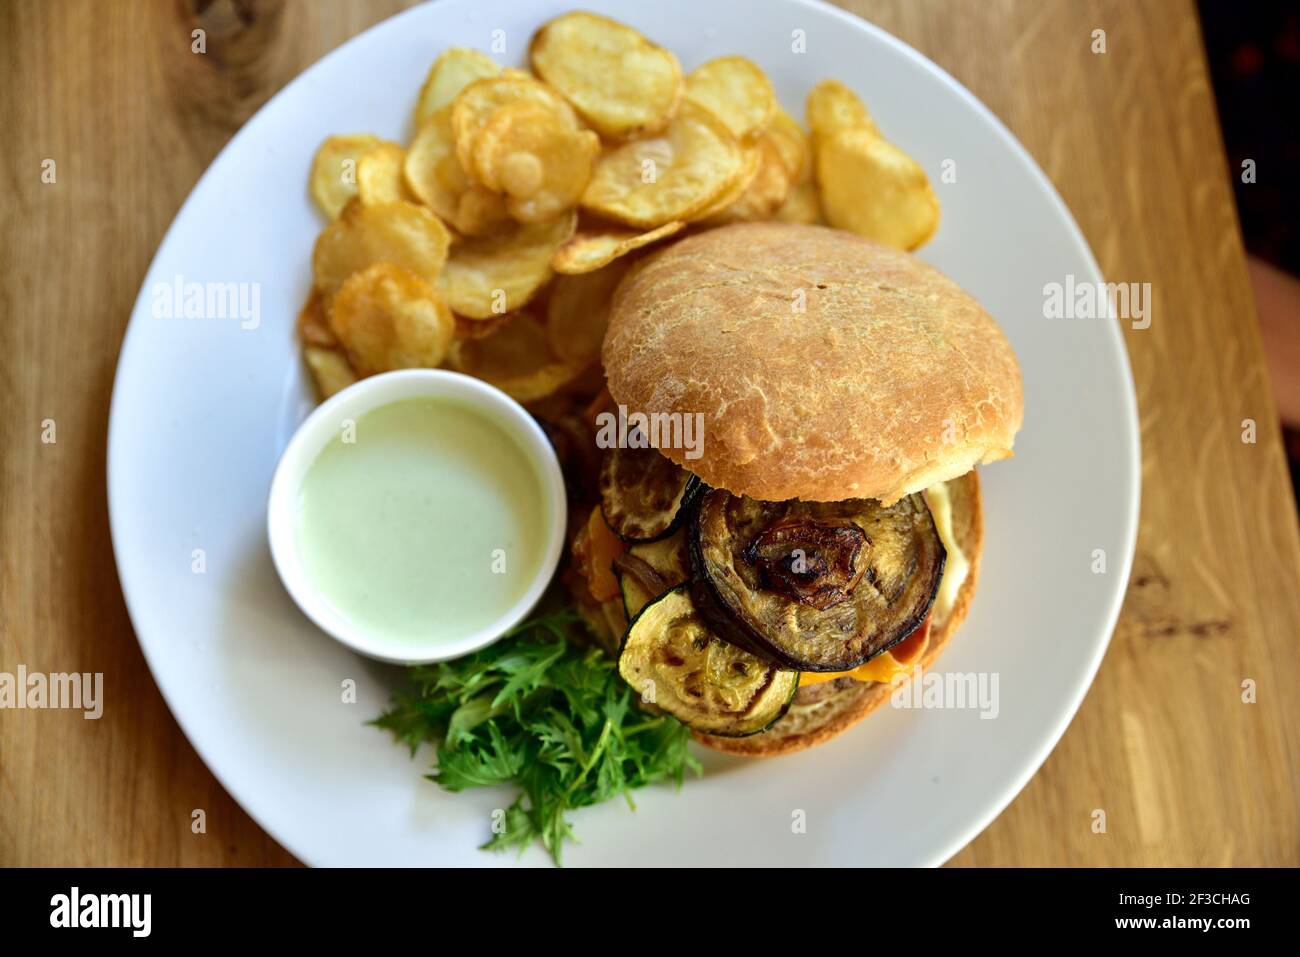 Cibo da ristorante con ingredienti freschi - hamburger con formaggio cheddar, zucchine, fette di patate e salsa tartara Foto Stock